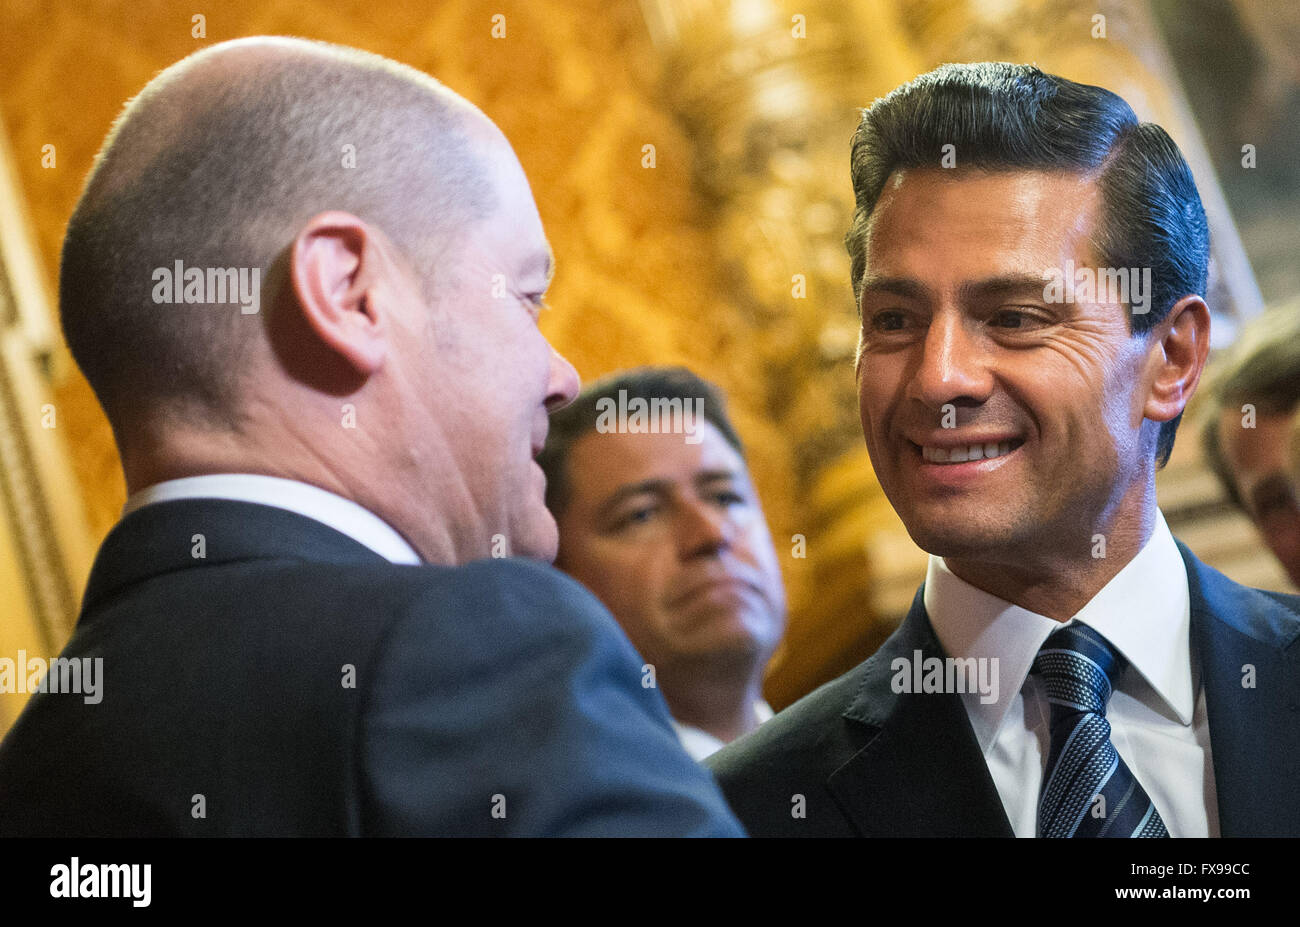 Amburgo, Germania. Xii Apr, 2016. Il Presidente messicano Enrique Peña Nieto (R) parla con il sindaco di Amburgo Olaf Scholz nel municipio di Amburgo, Germania, 12 aprile 2016. Foto: LUKAS SCHULZE/dpa/Alamy Live News Foto Stock